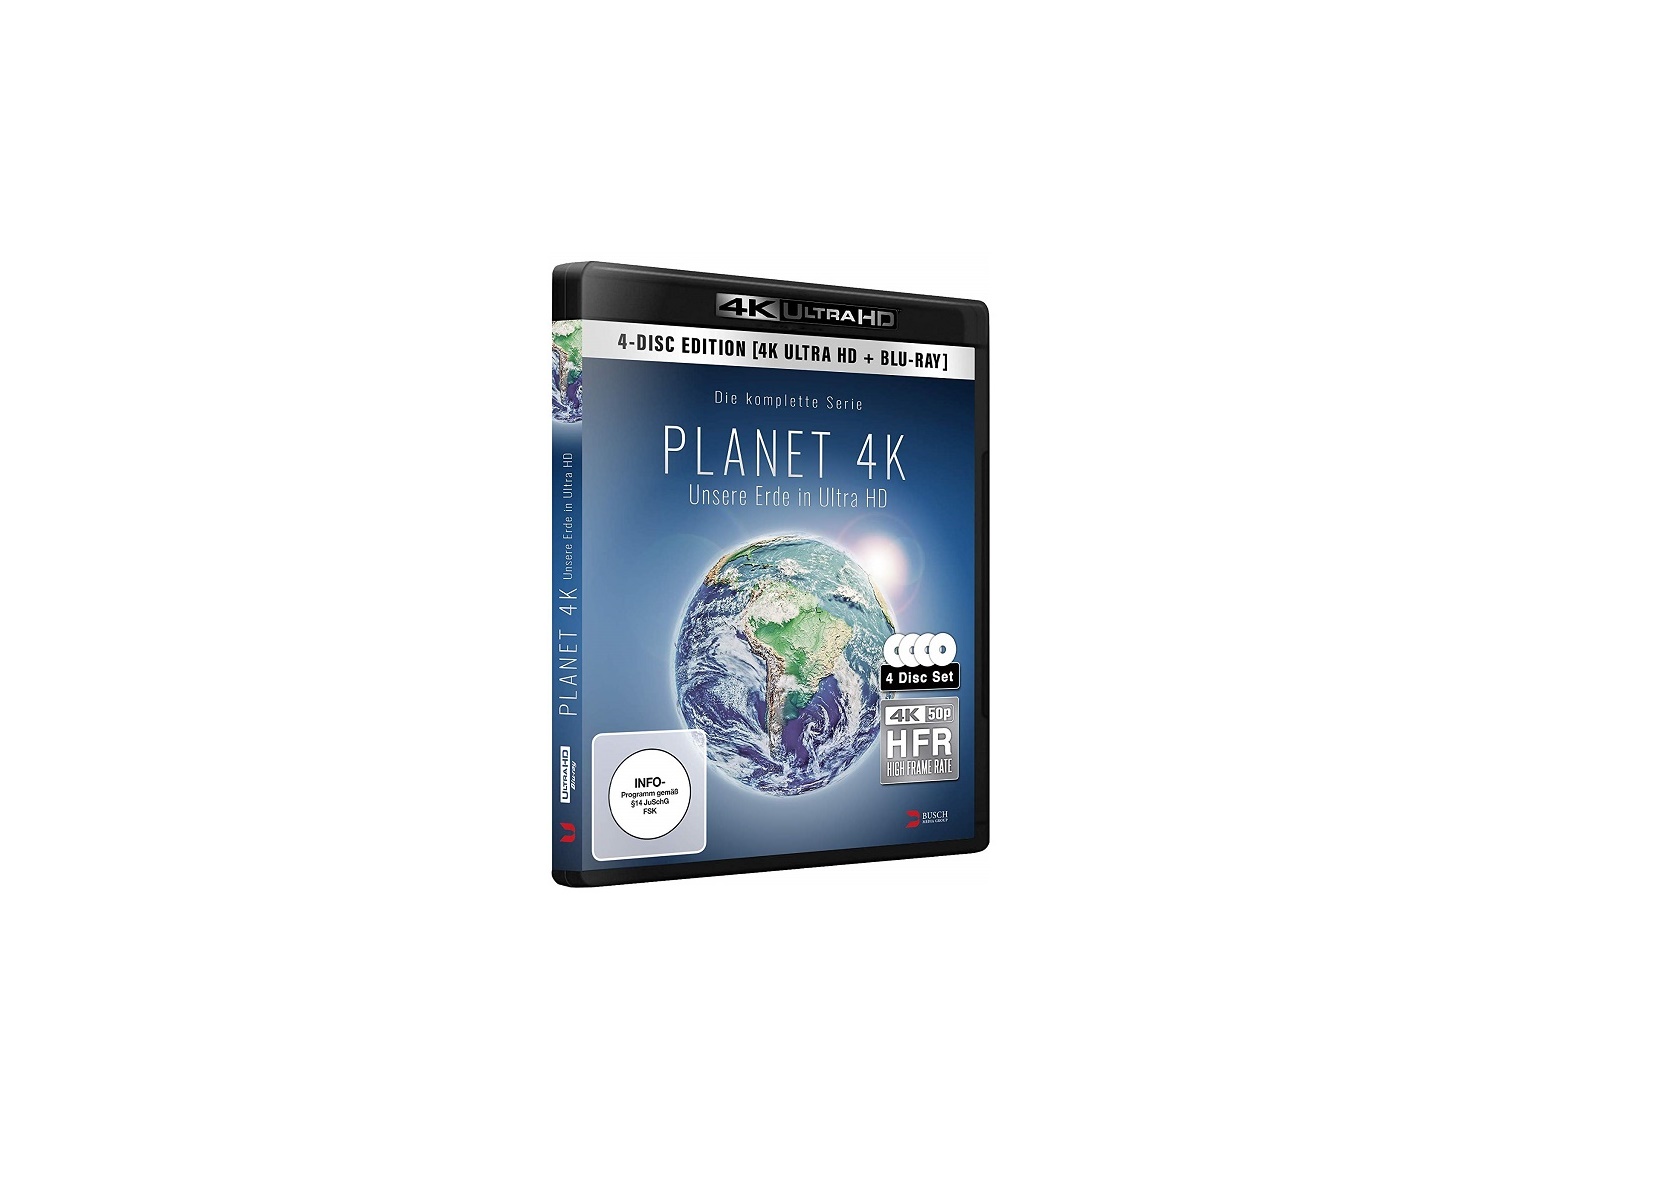 "Planet 4K - Unsere Erde in Ultra HD": Doku erscheint mit High Frame Rate auf 4K-Blu-ray